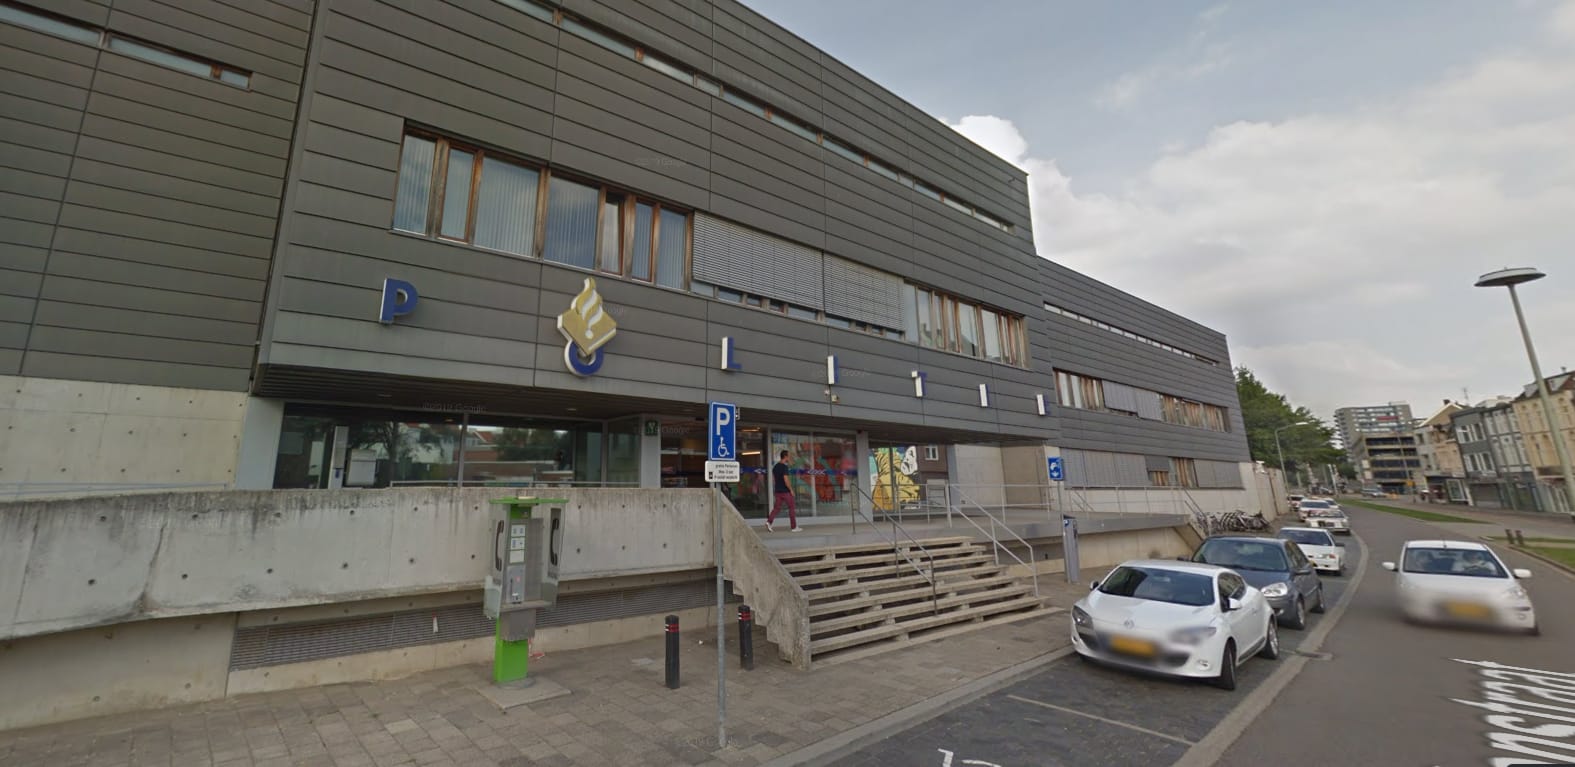 Aanslag met molotovcocktail op politiebureau Heerlen, drie mannen opgepakt